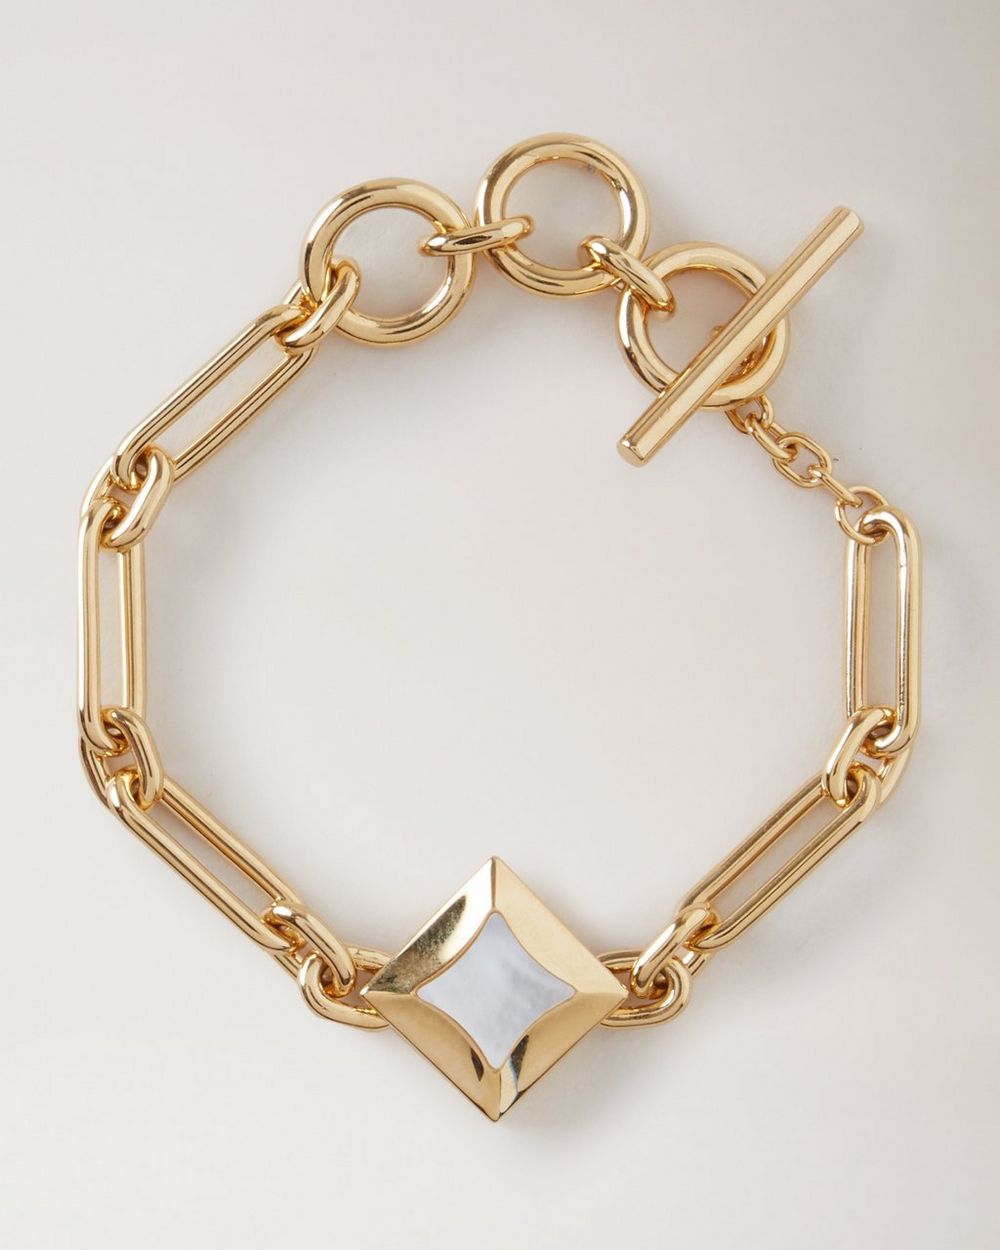 Elegant Louis Vuitton Monogram Party Bracelet Chile